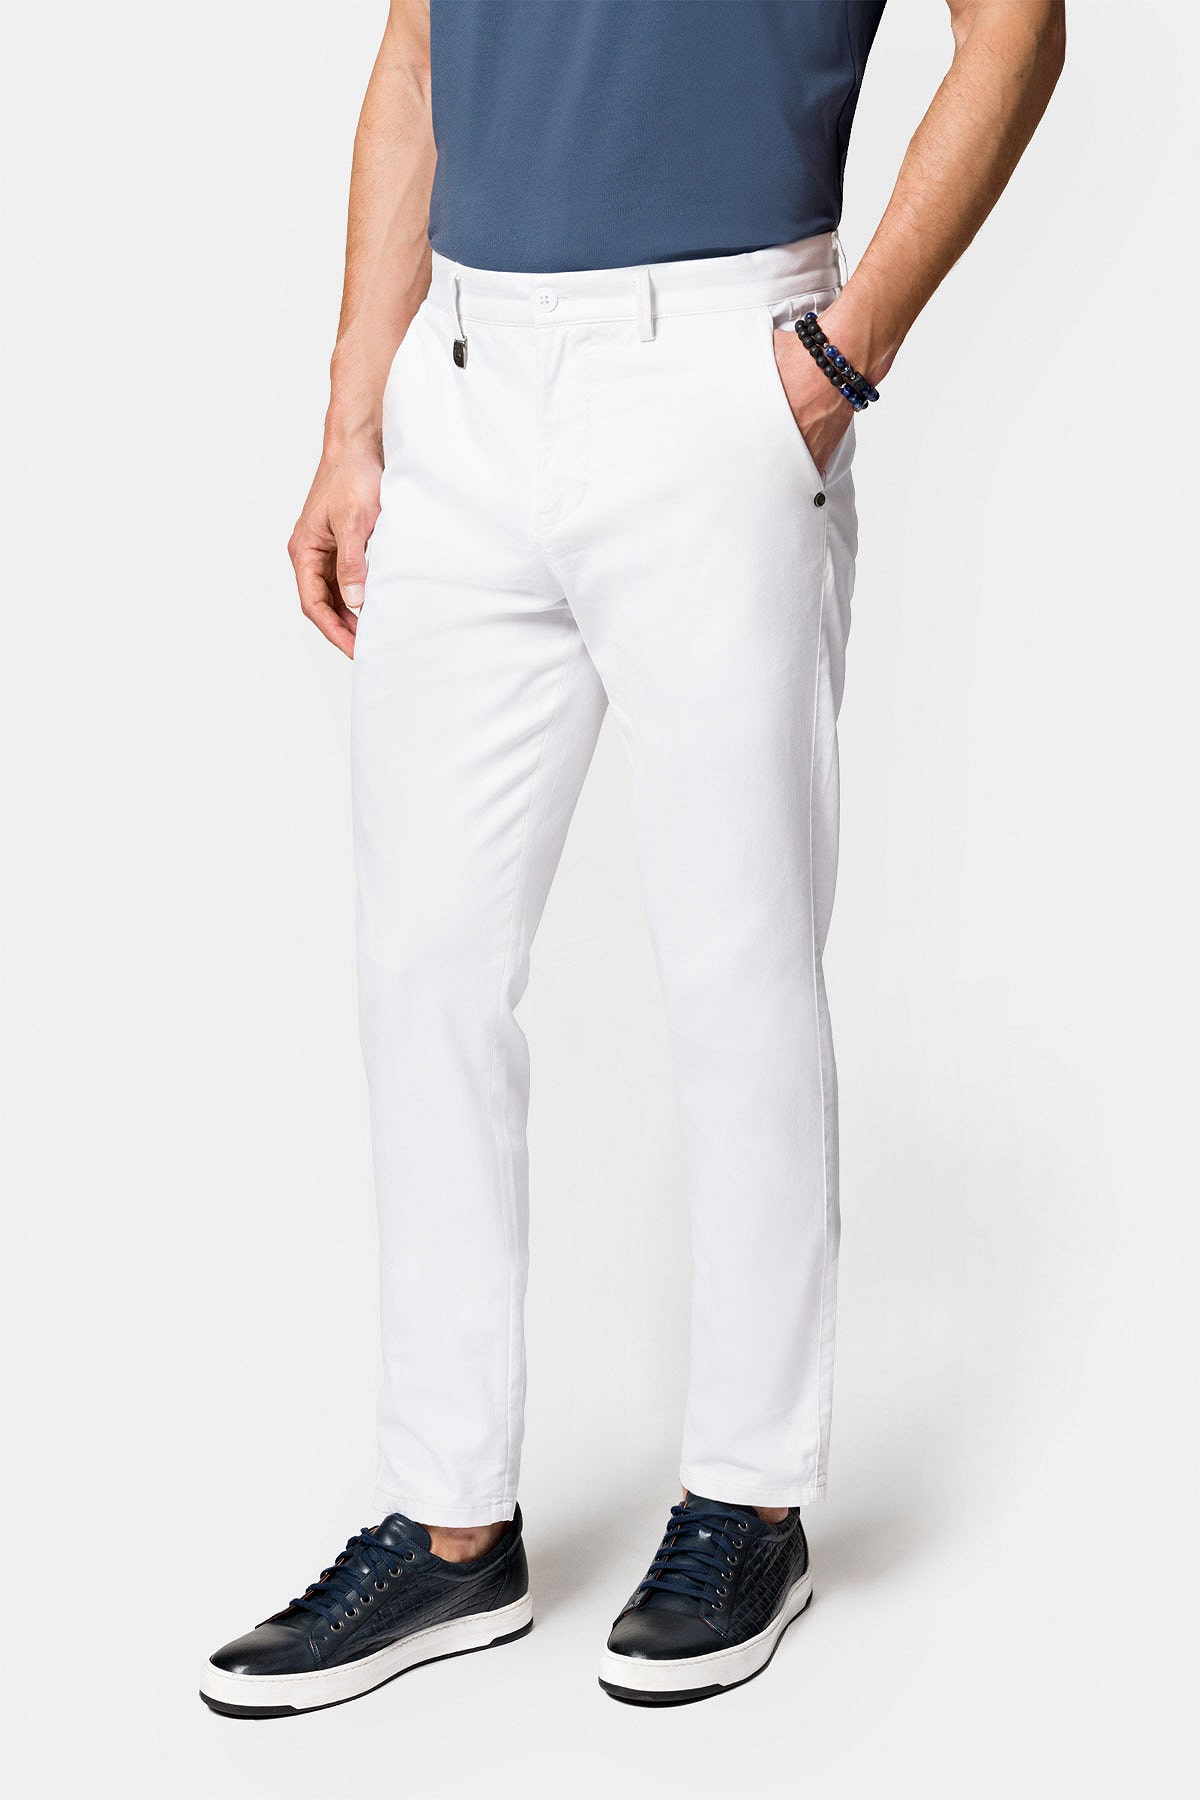 białe-spodnie